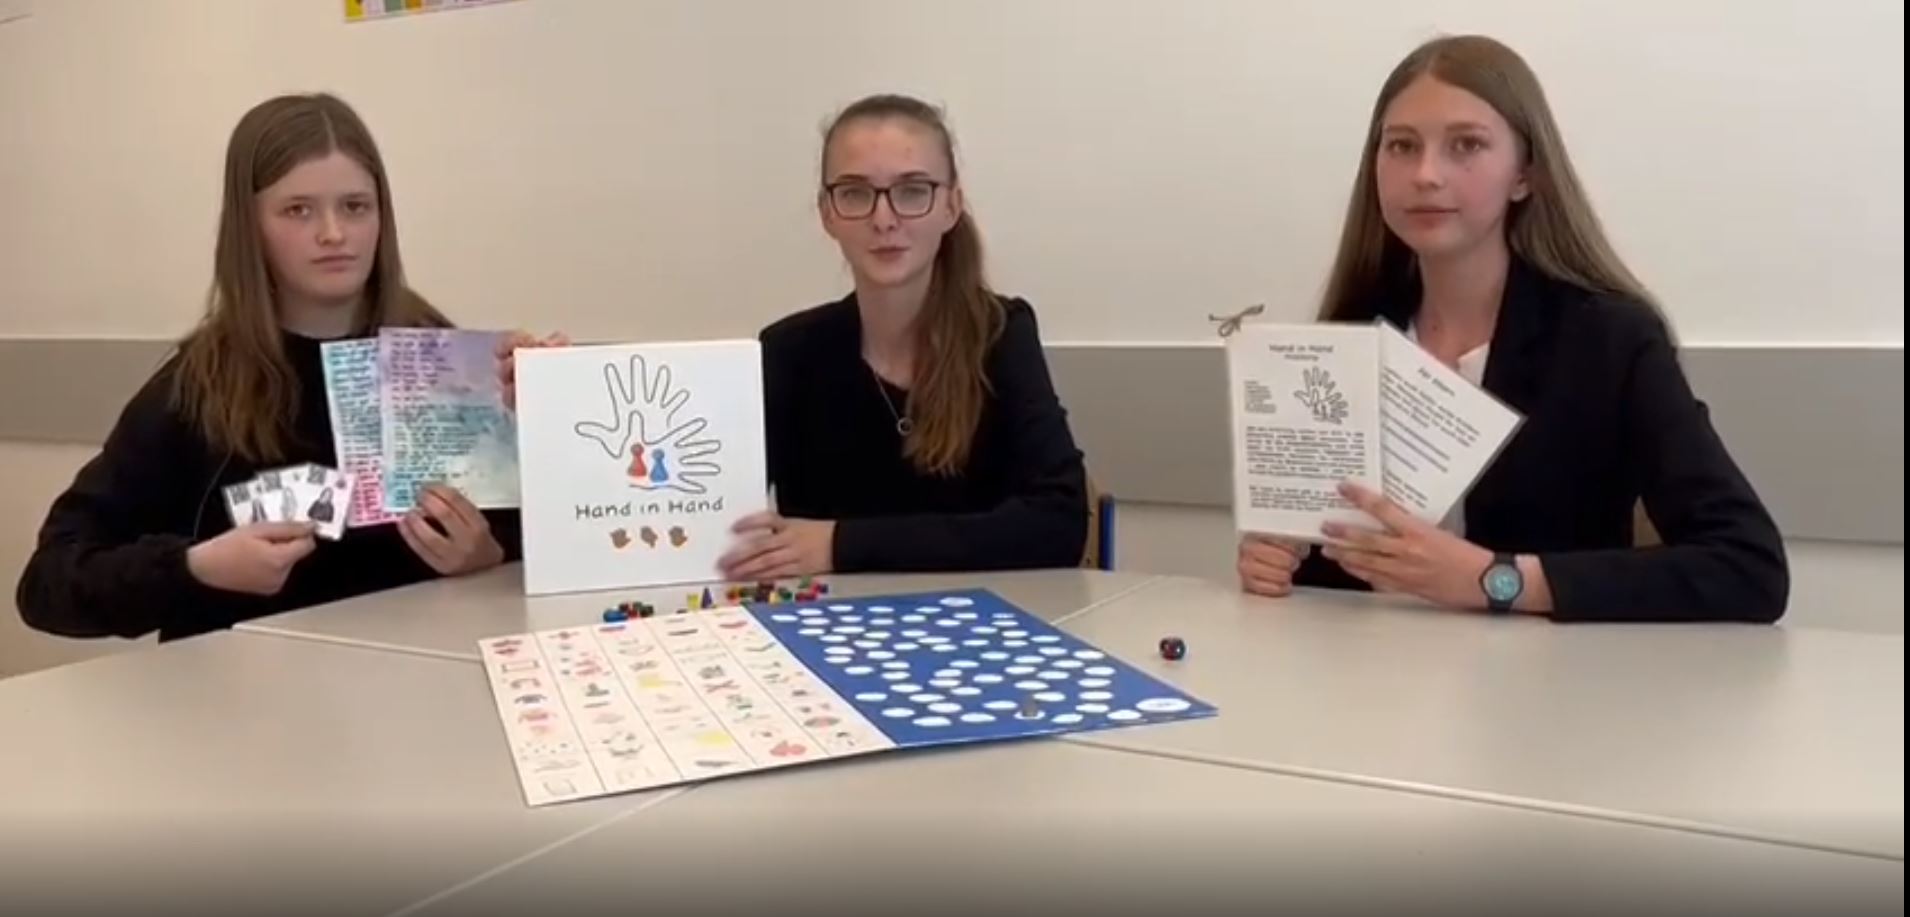 Drei Schülerinnen präsentieren das inklusive Brettspiel "Hand in Hand" zum Erlernen der Gebärdensprache